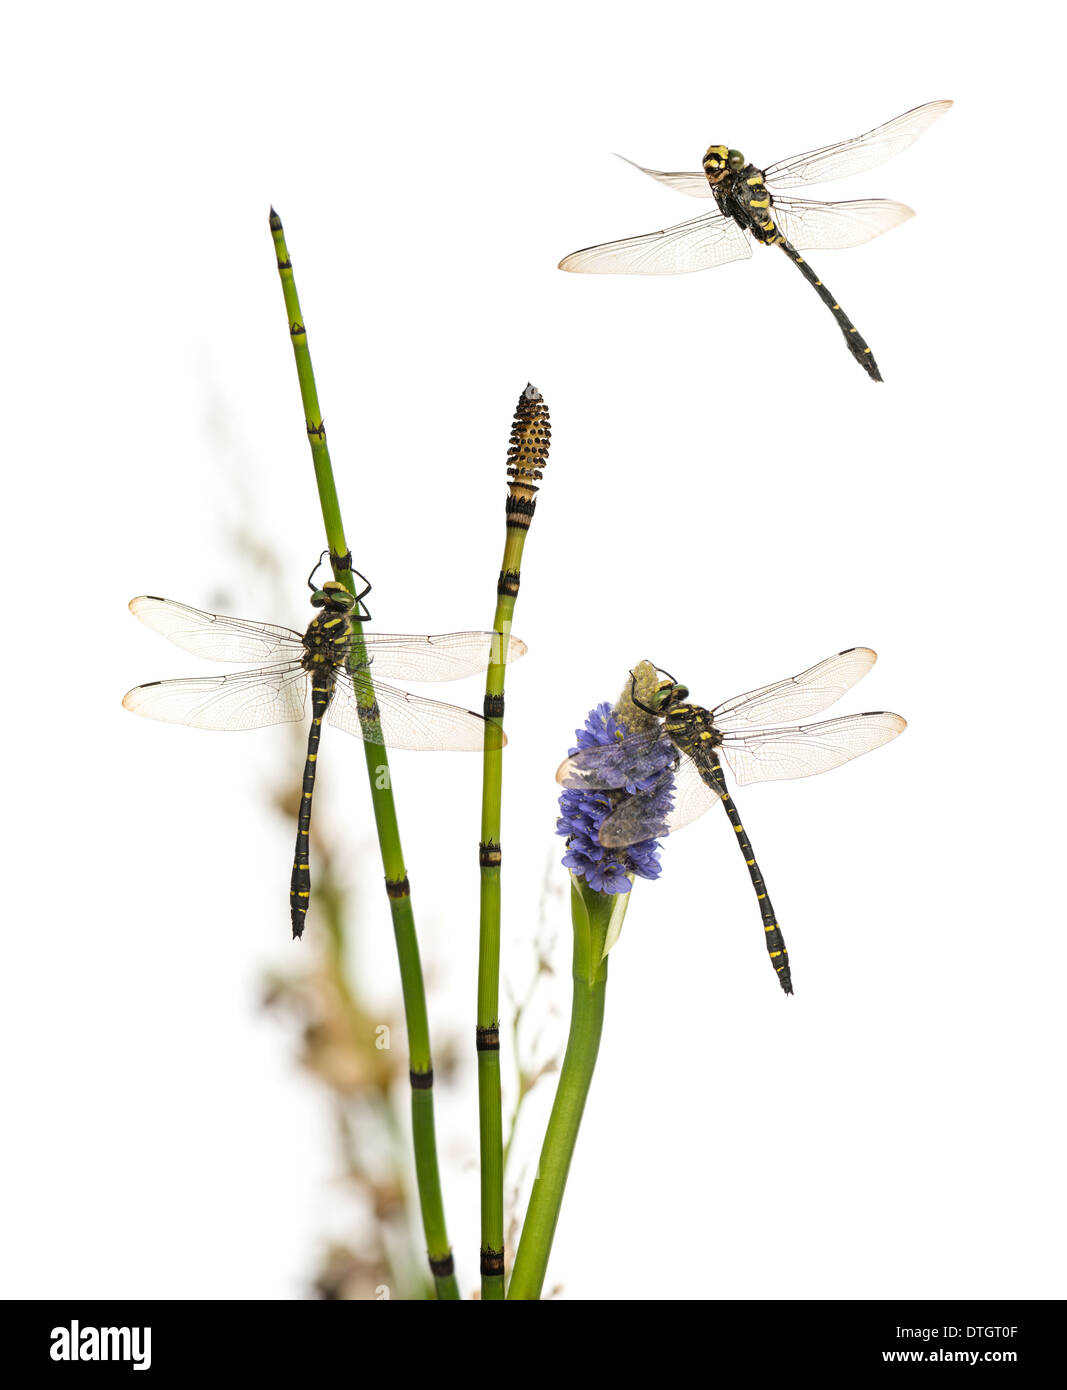 Gruppe von Cordulegaster Bidentata Libellen an Pflanze, vor weißem Hintergrund Stockfoto